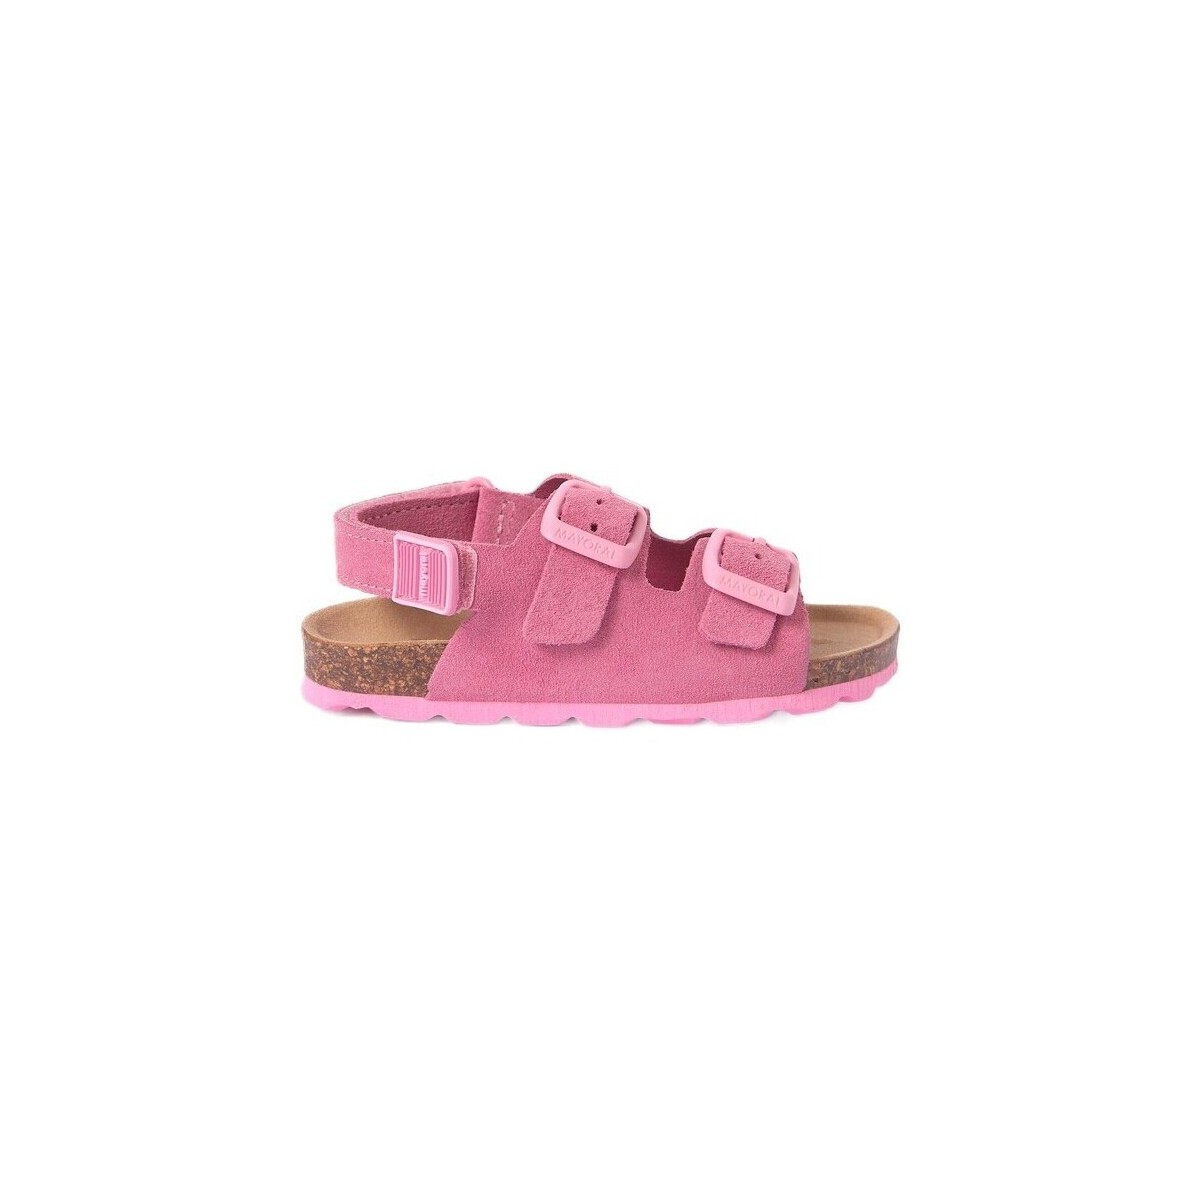 kengät Sandaalit ja avokkaat Mayoral 28250-18 Vaaleanpunainen